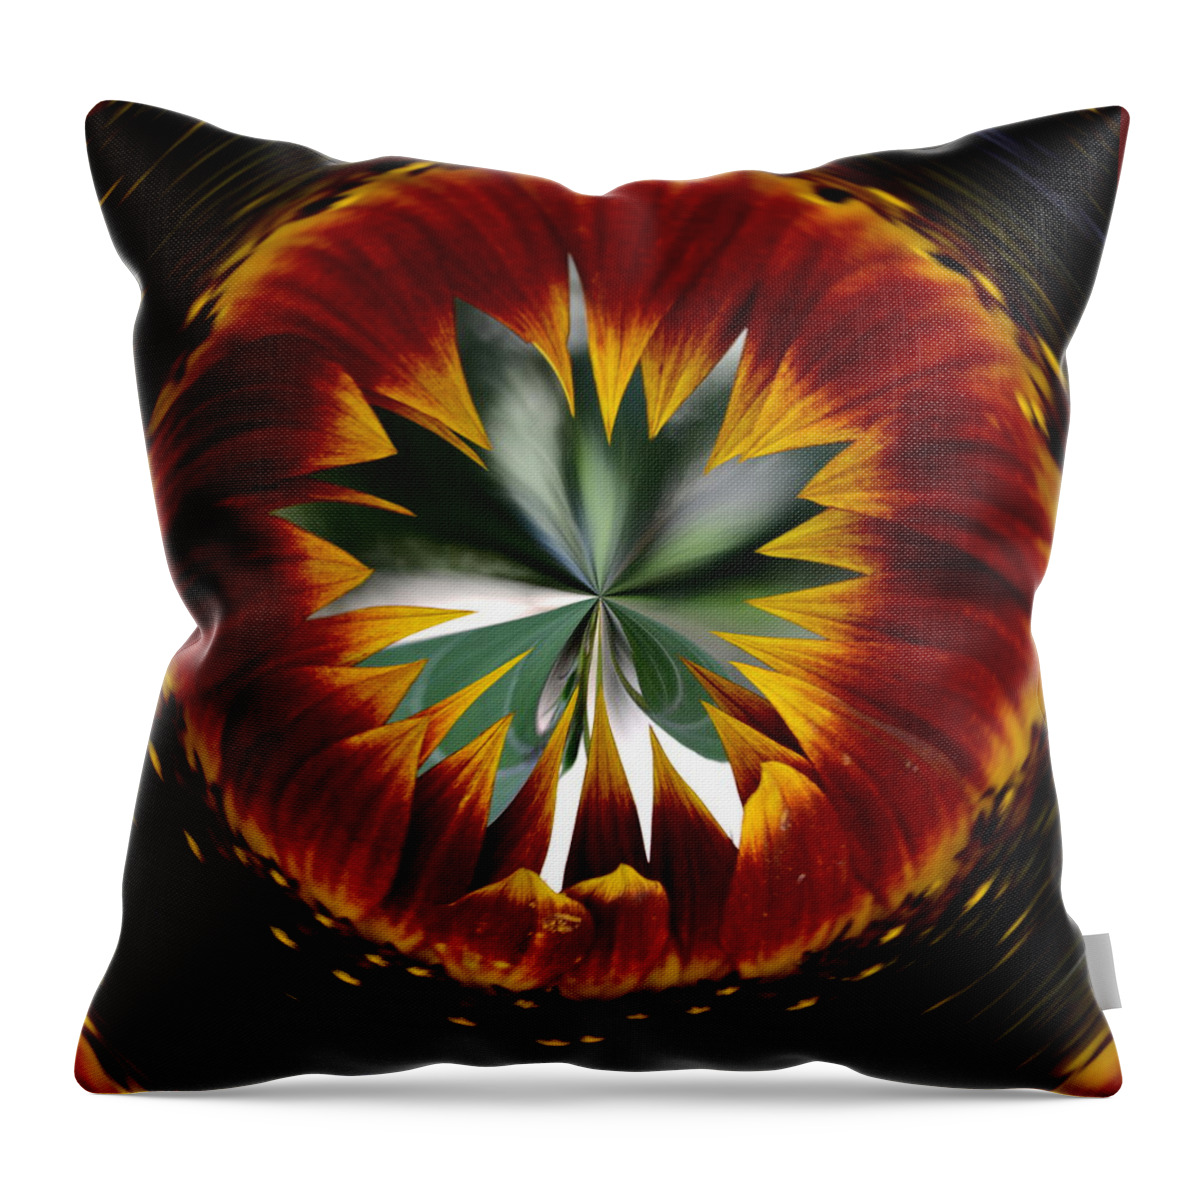 Sunflower Throw Pillow featuring the digital art Sunflower Circle by Cheryl Charette